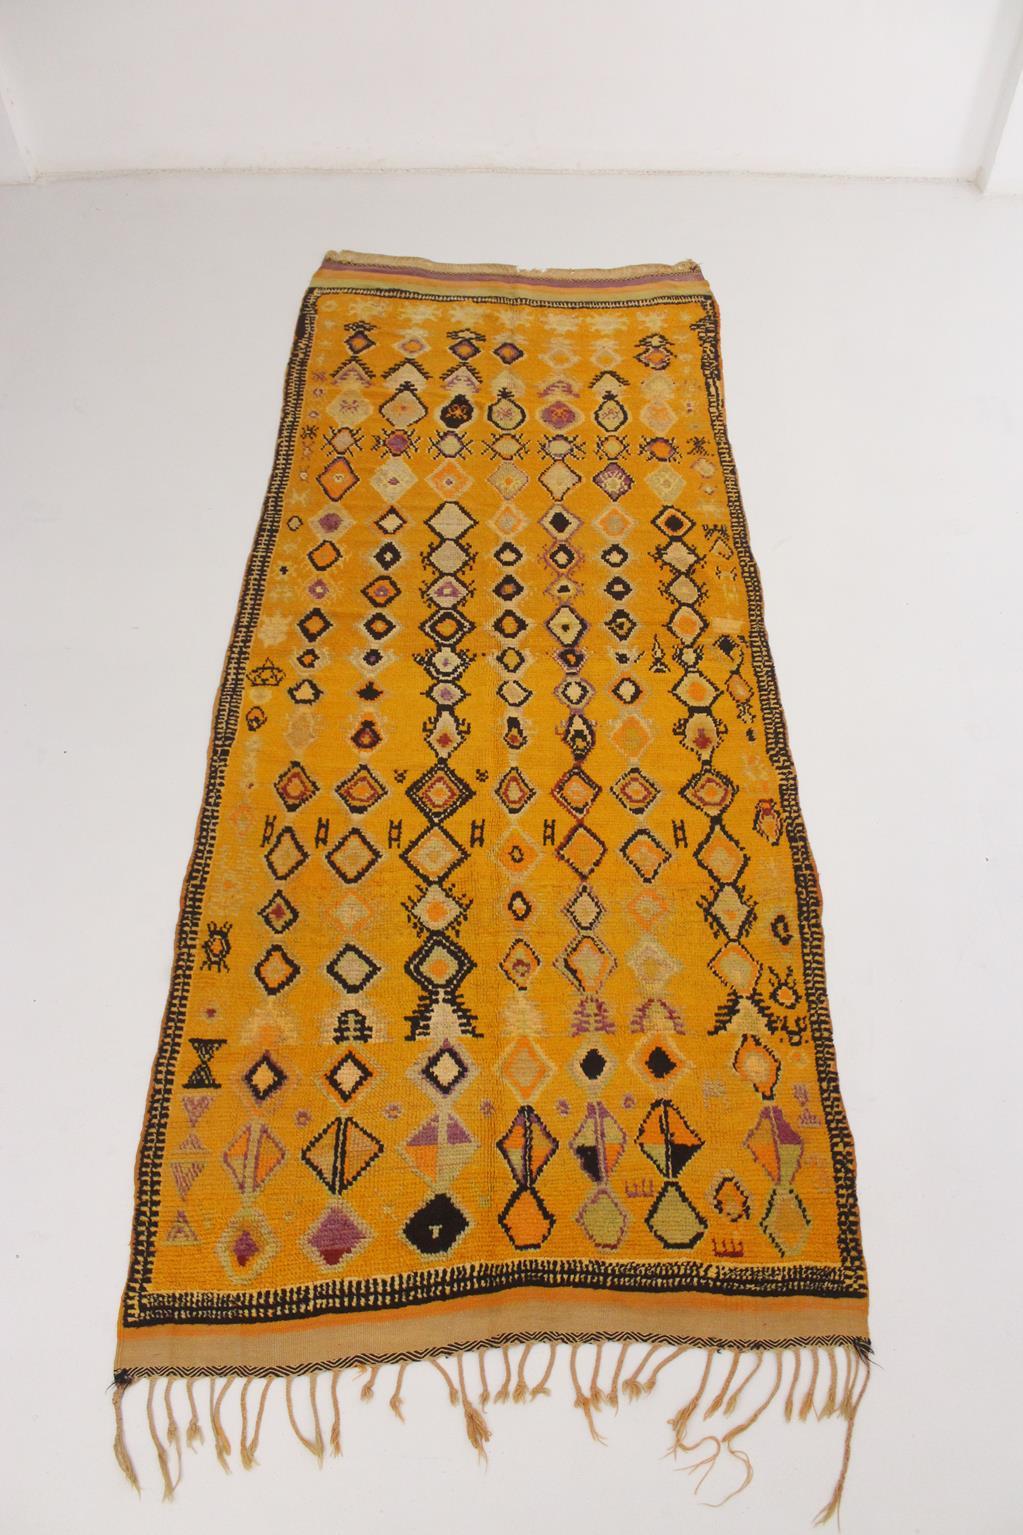 Dieser seltene Vintage-Teppich von Ait Ouaouzguite wurde in der Gegend von Taznakht, Marokko, hergestellt.

Es ist in einem leuchtenden Gelb - natürlich gefärbt mit Granatapfelschalen - mit schwarzen, violetten, magentafarbenen und orangefarbenen